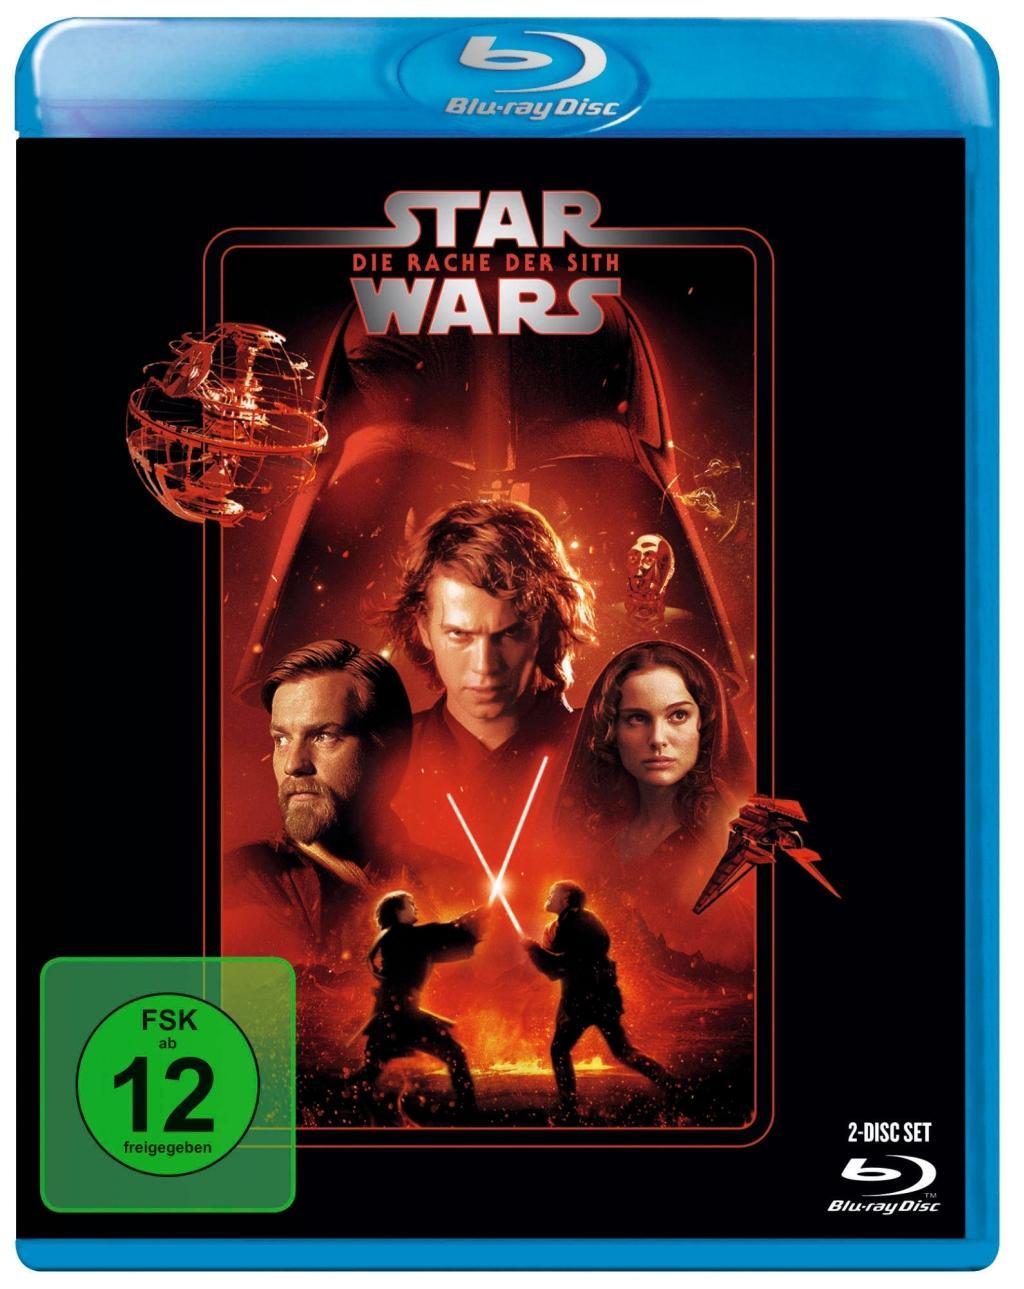 Видео Star Wars Episode 3, Die Rache der Sith, 1 Blu-ray George Lucas